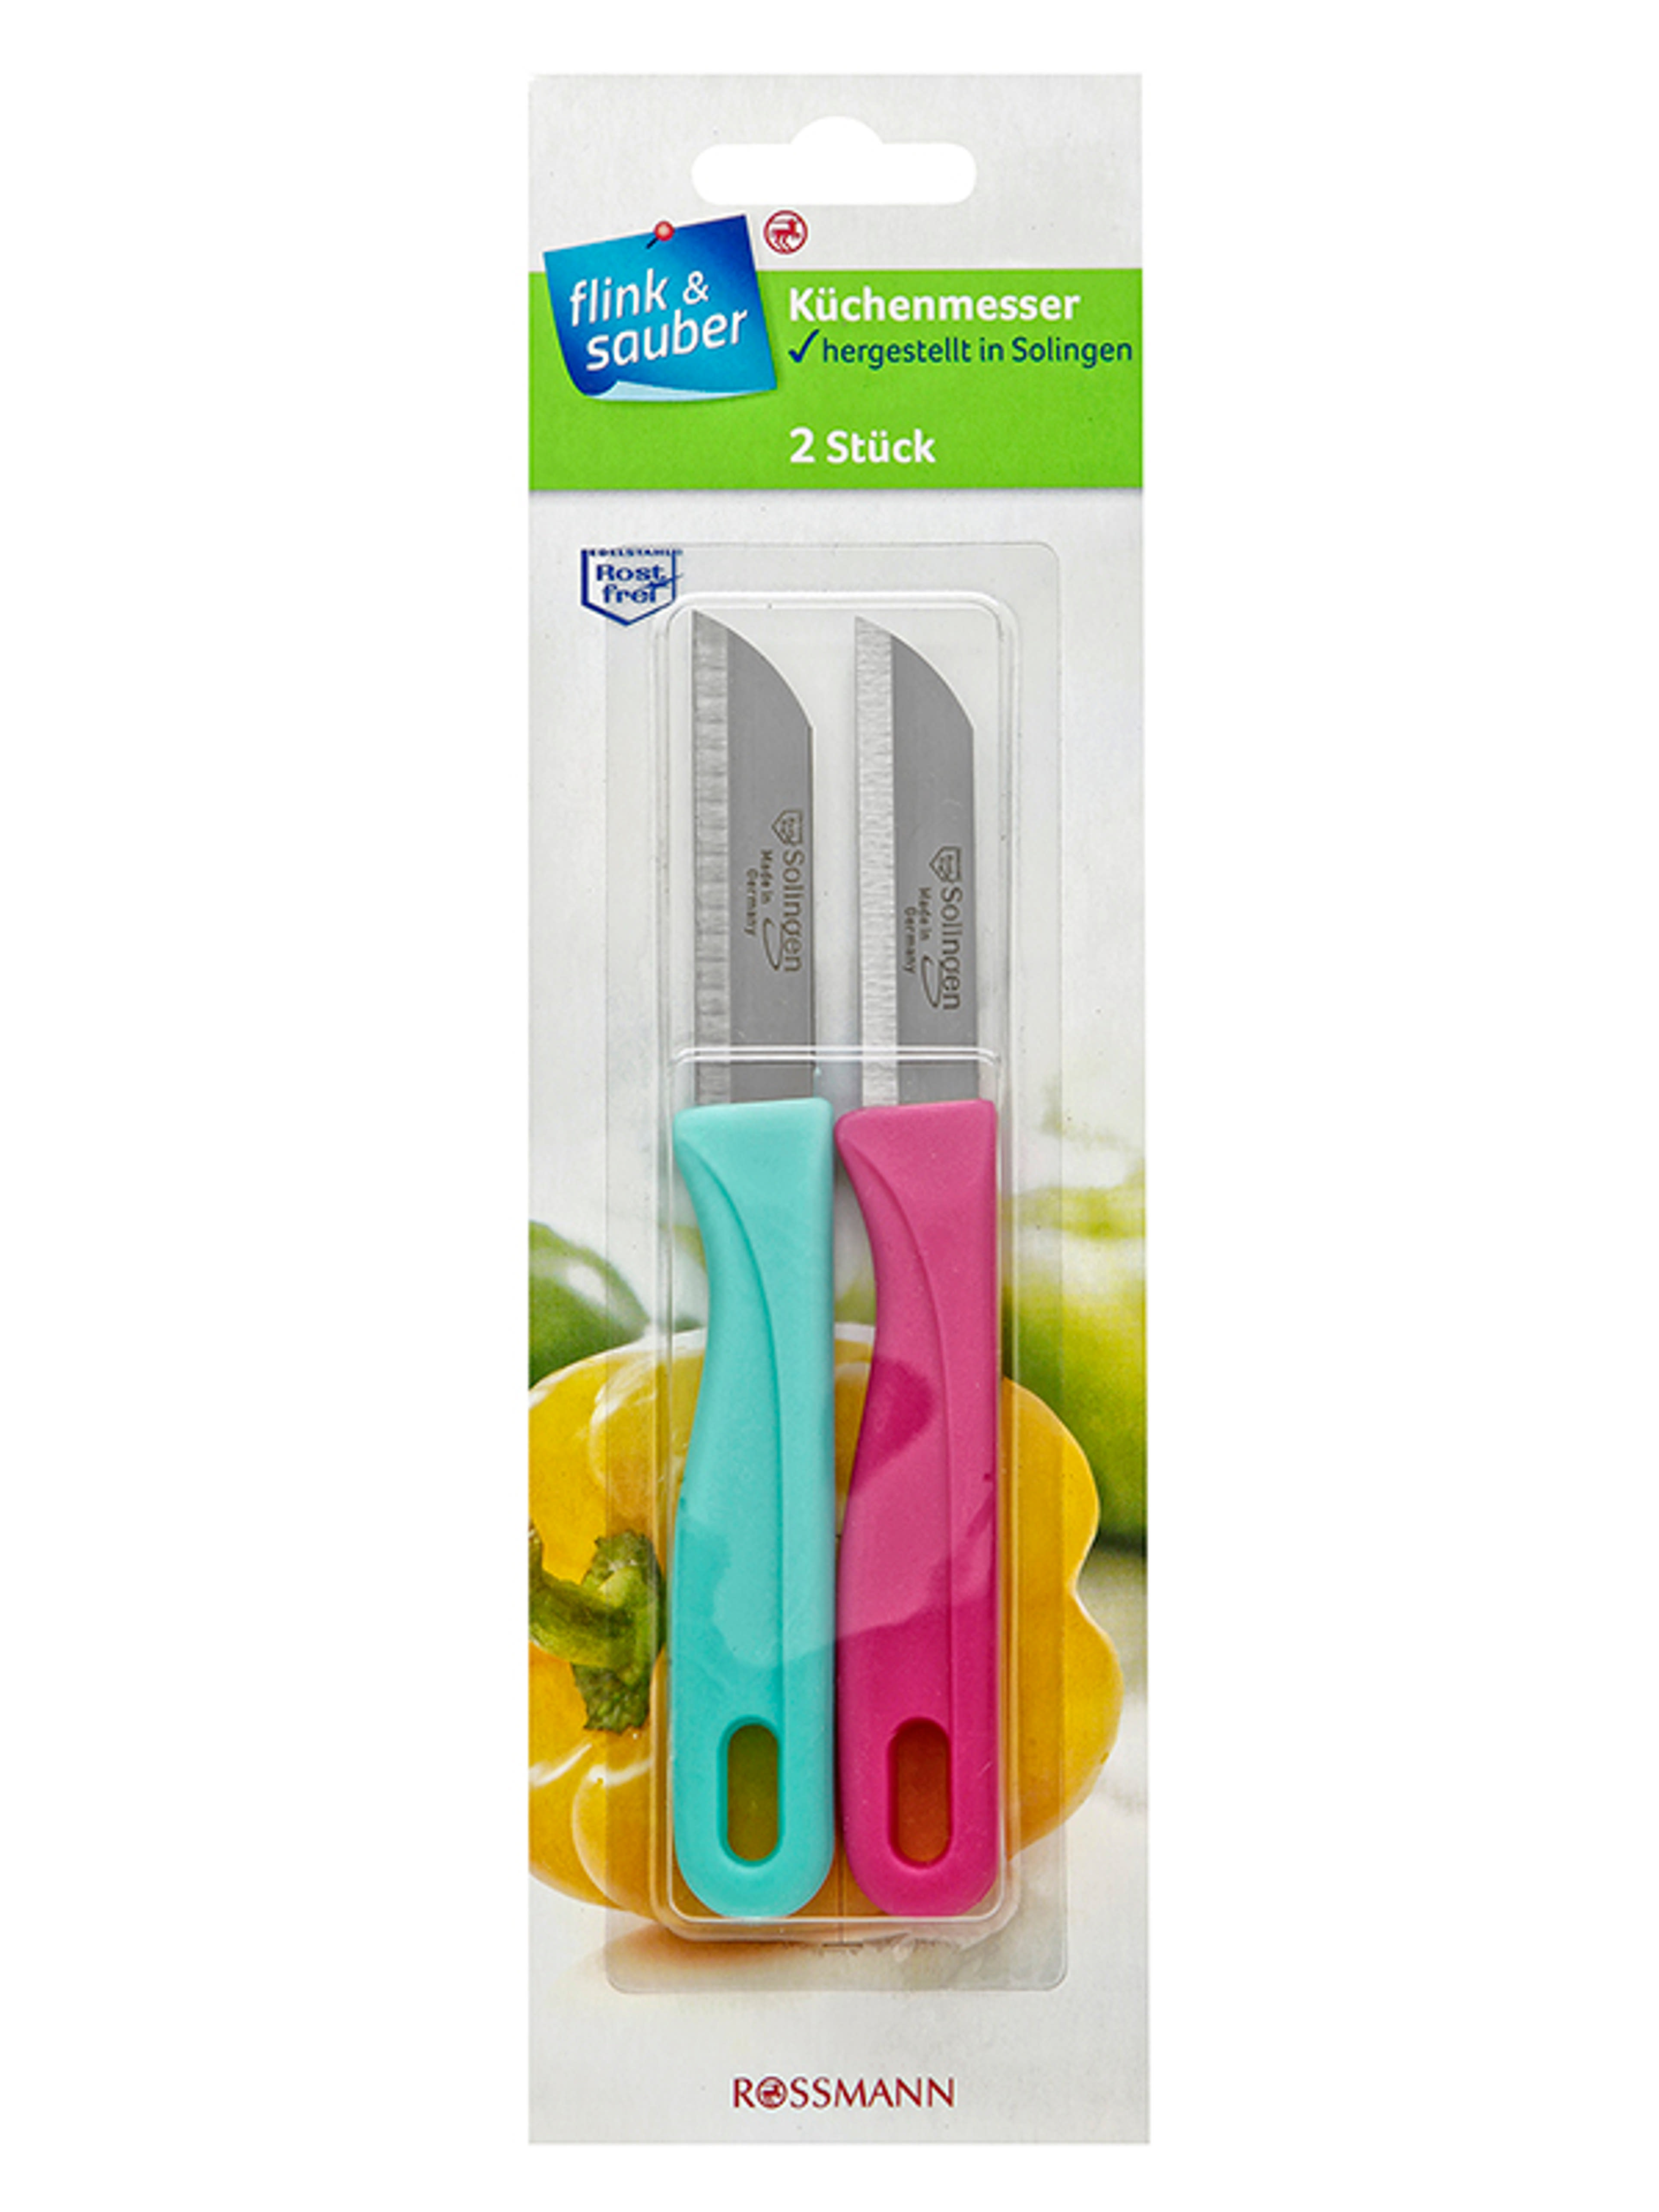 Flink&Saube 2 darabos kés szett - 1 db